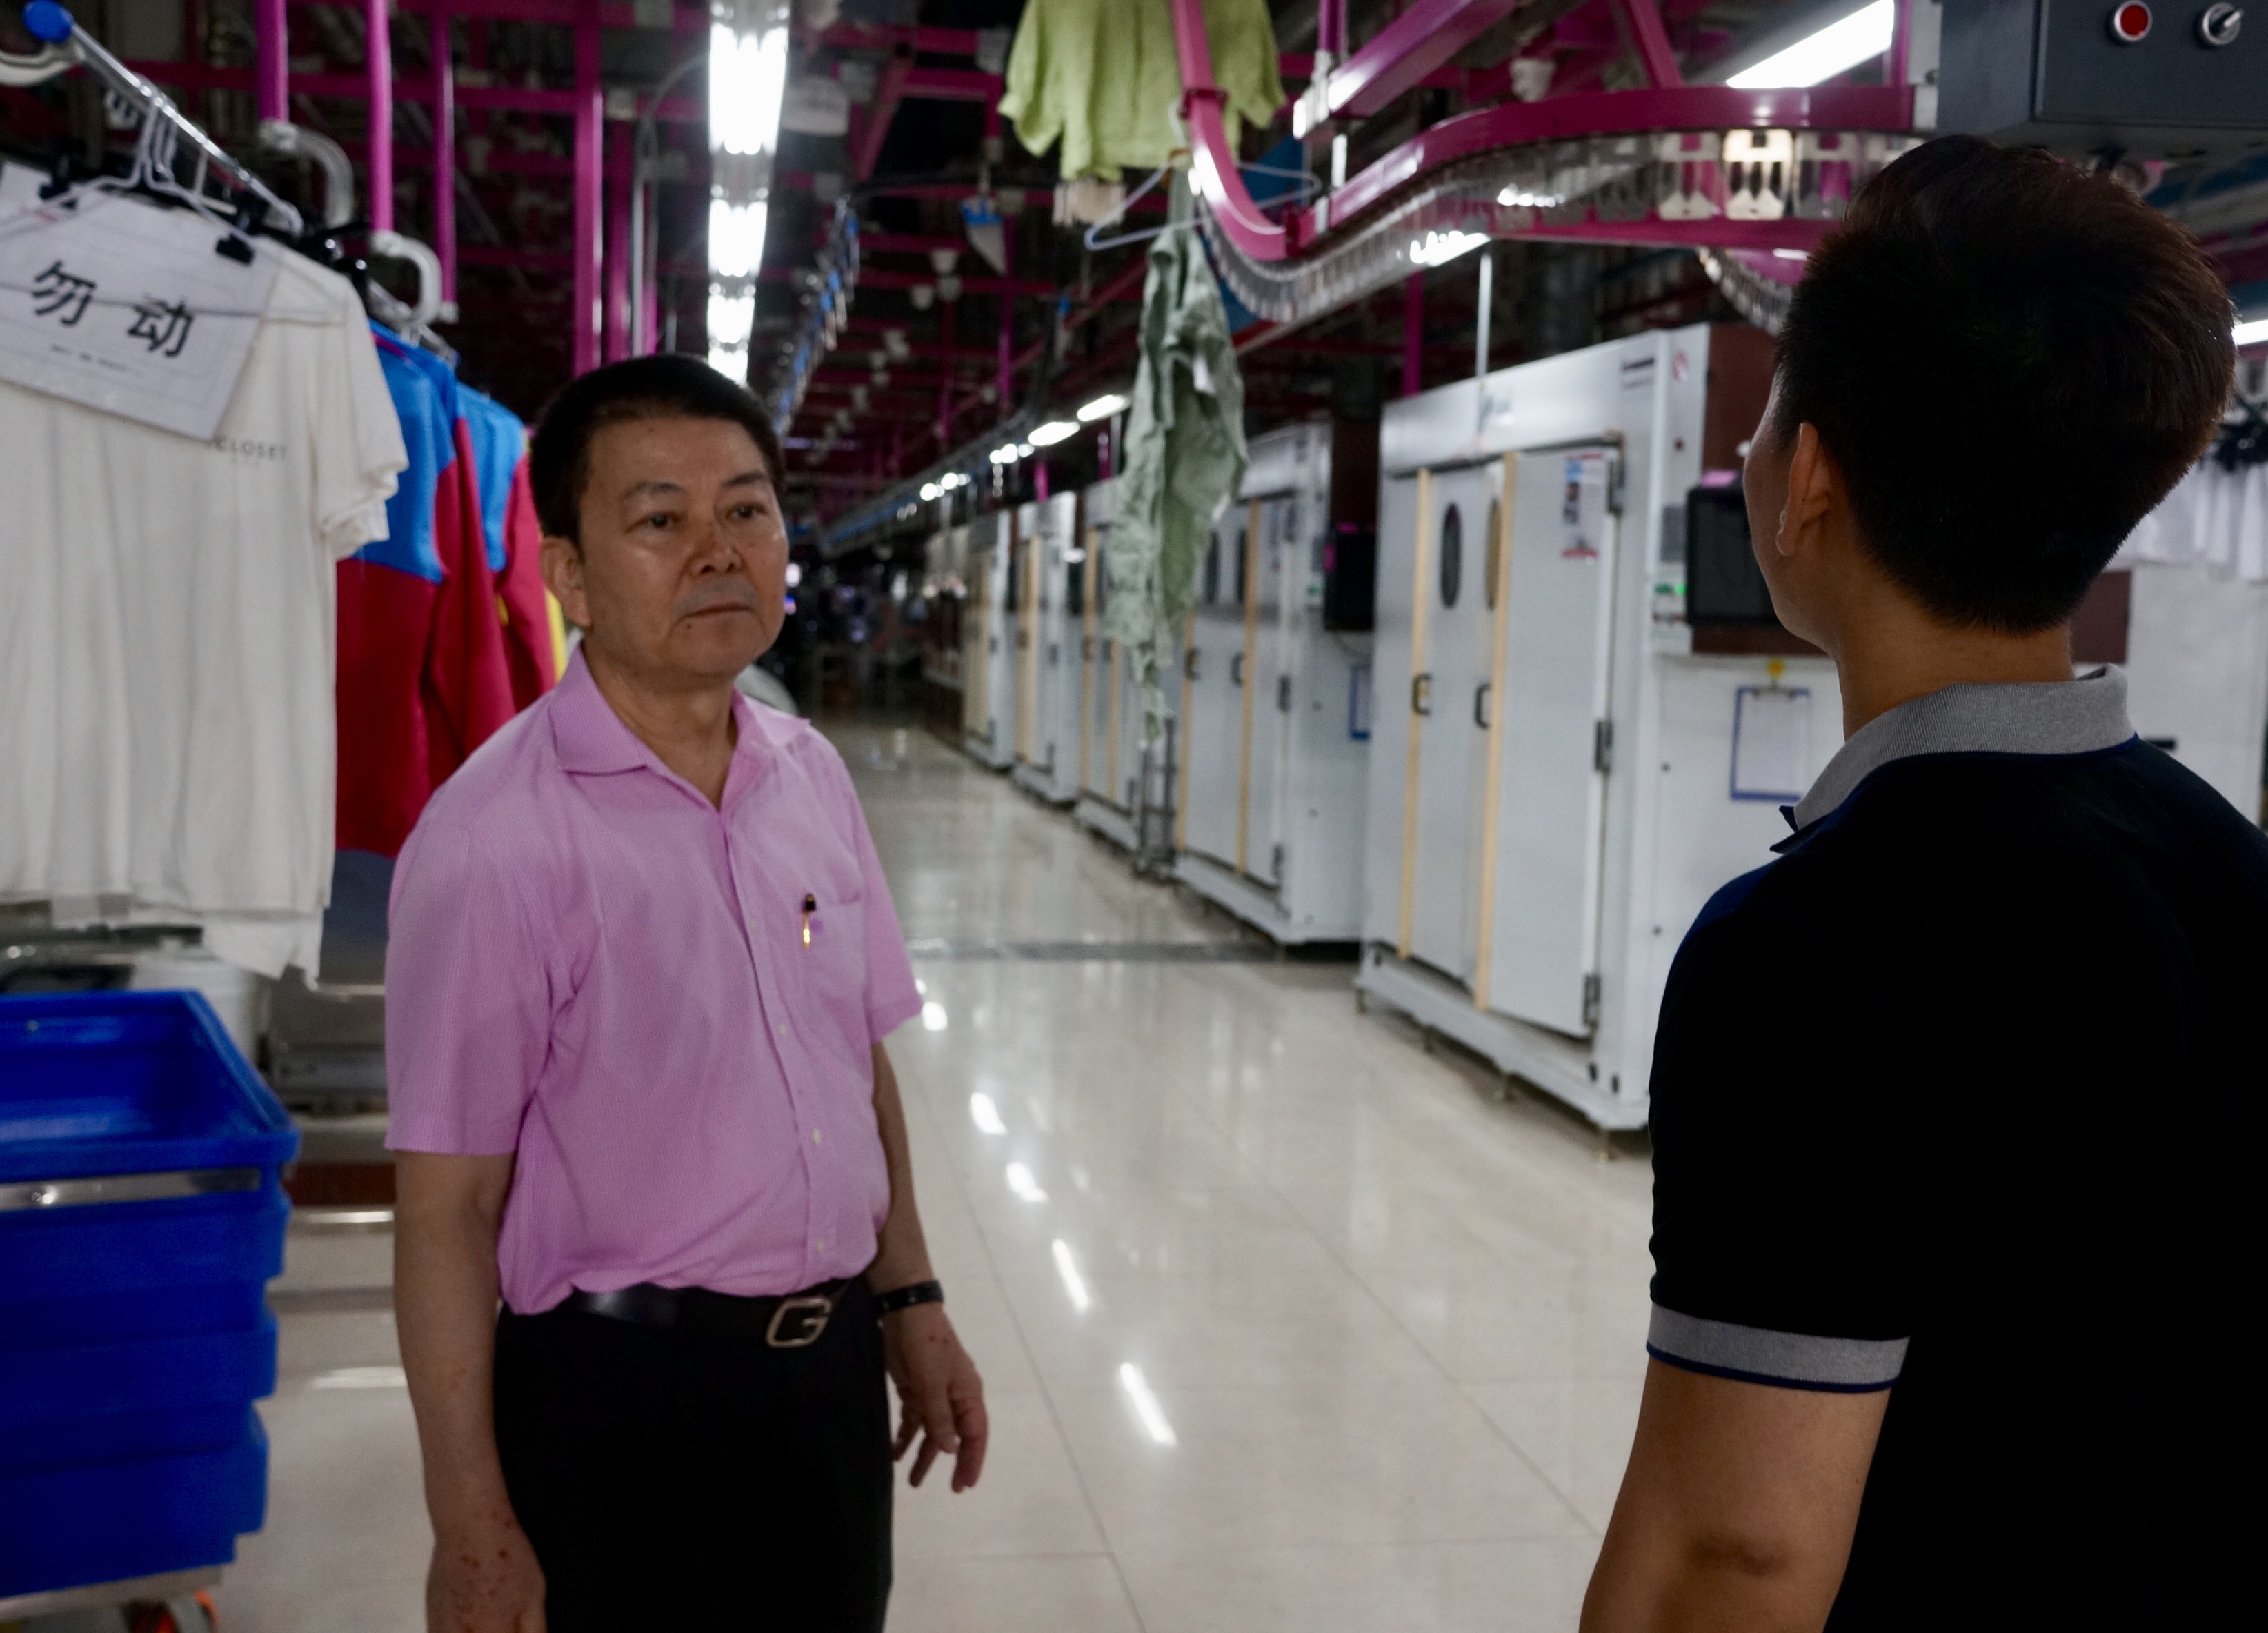 天天洗衣拥有全球最大的智能洗衣工厂。卢志基父子在工厂车间。.jpg